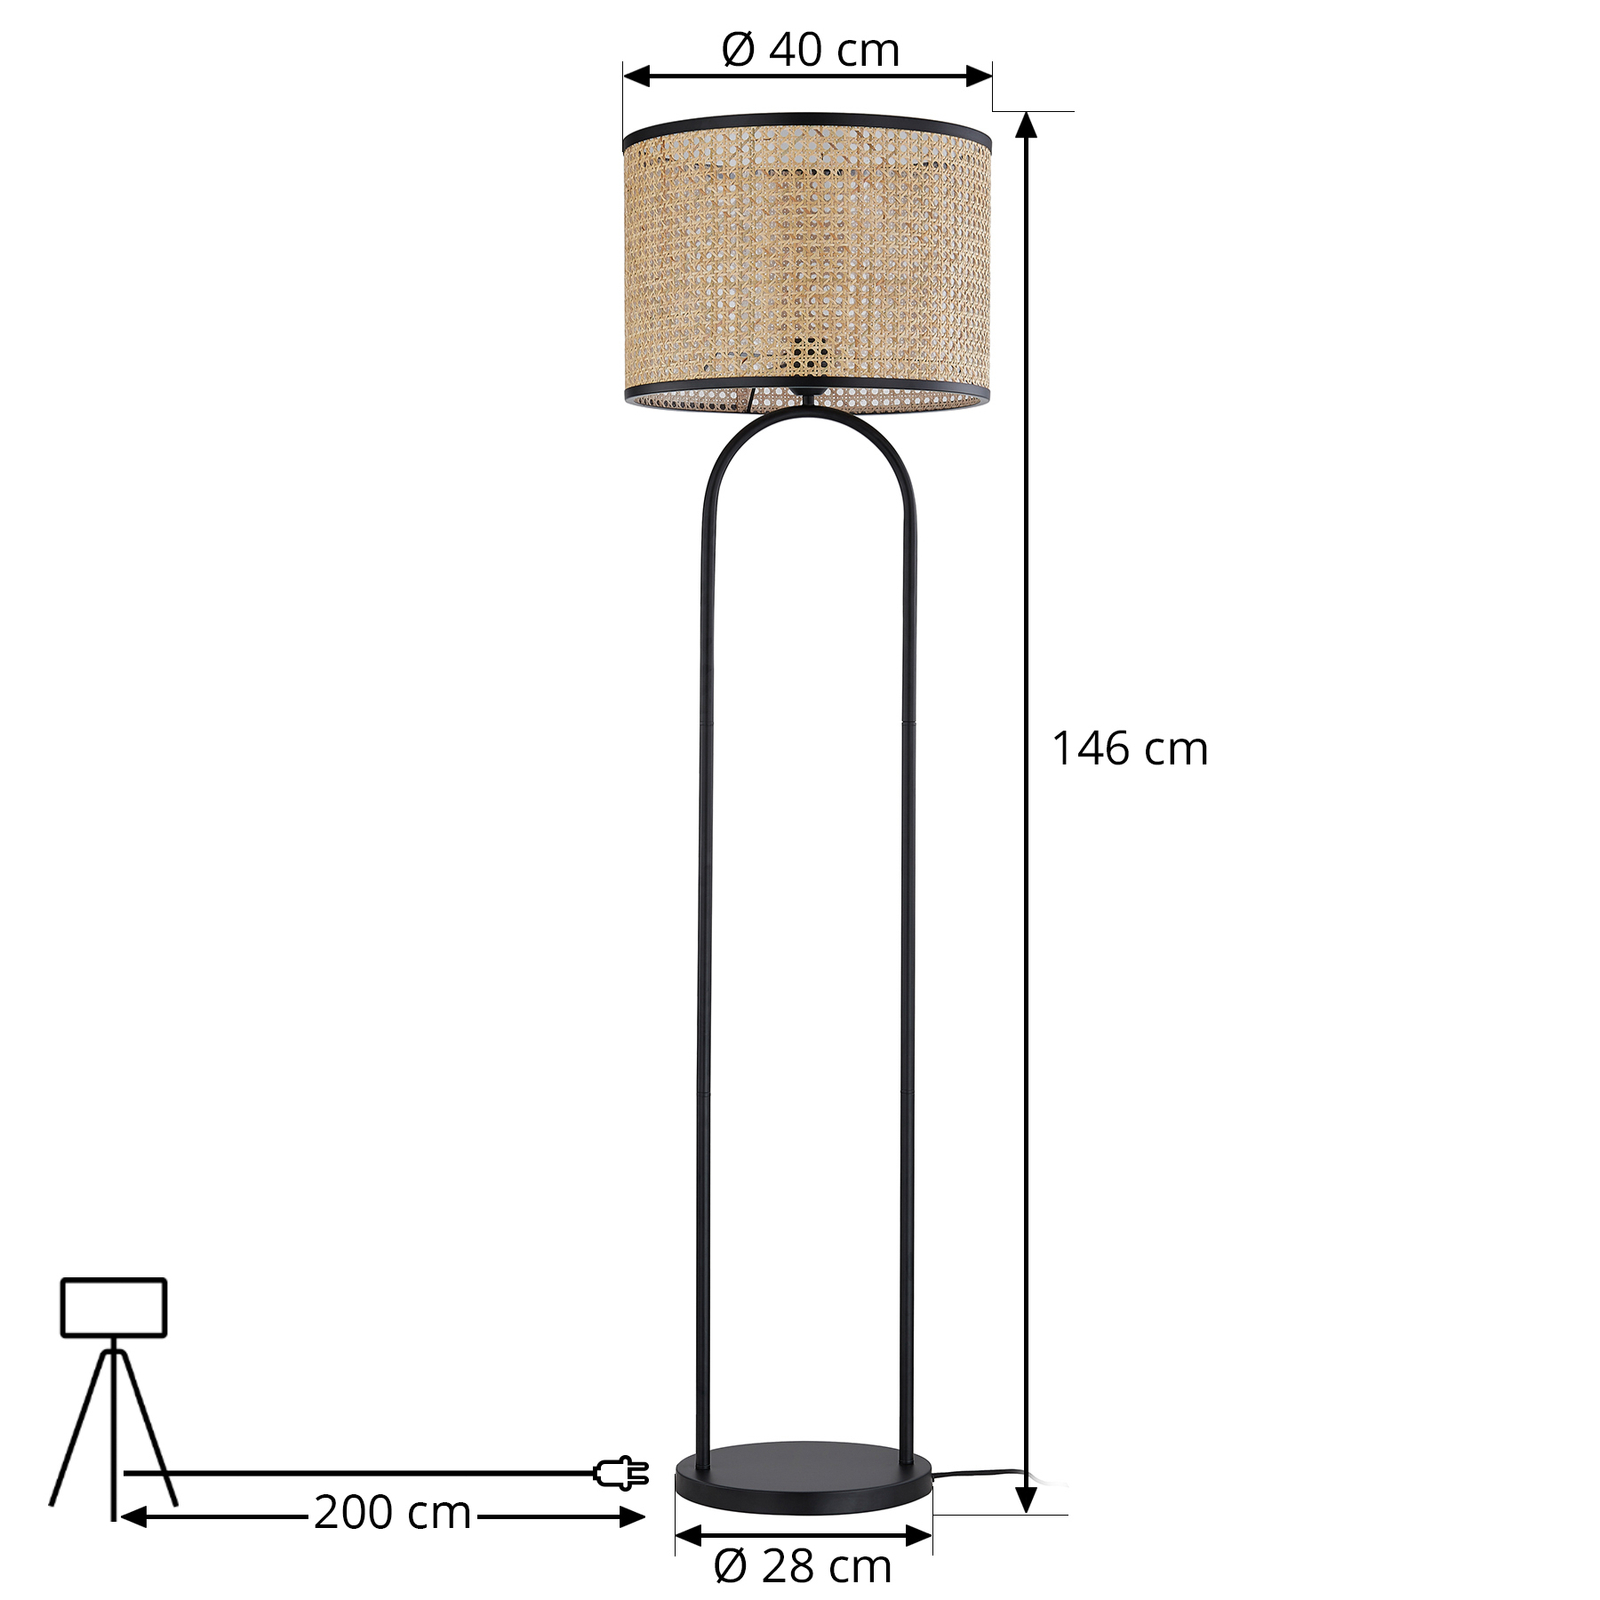 Lindby állólámpa Yaelle, 146 cm magas, rattan, fekete, E27